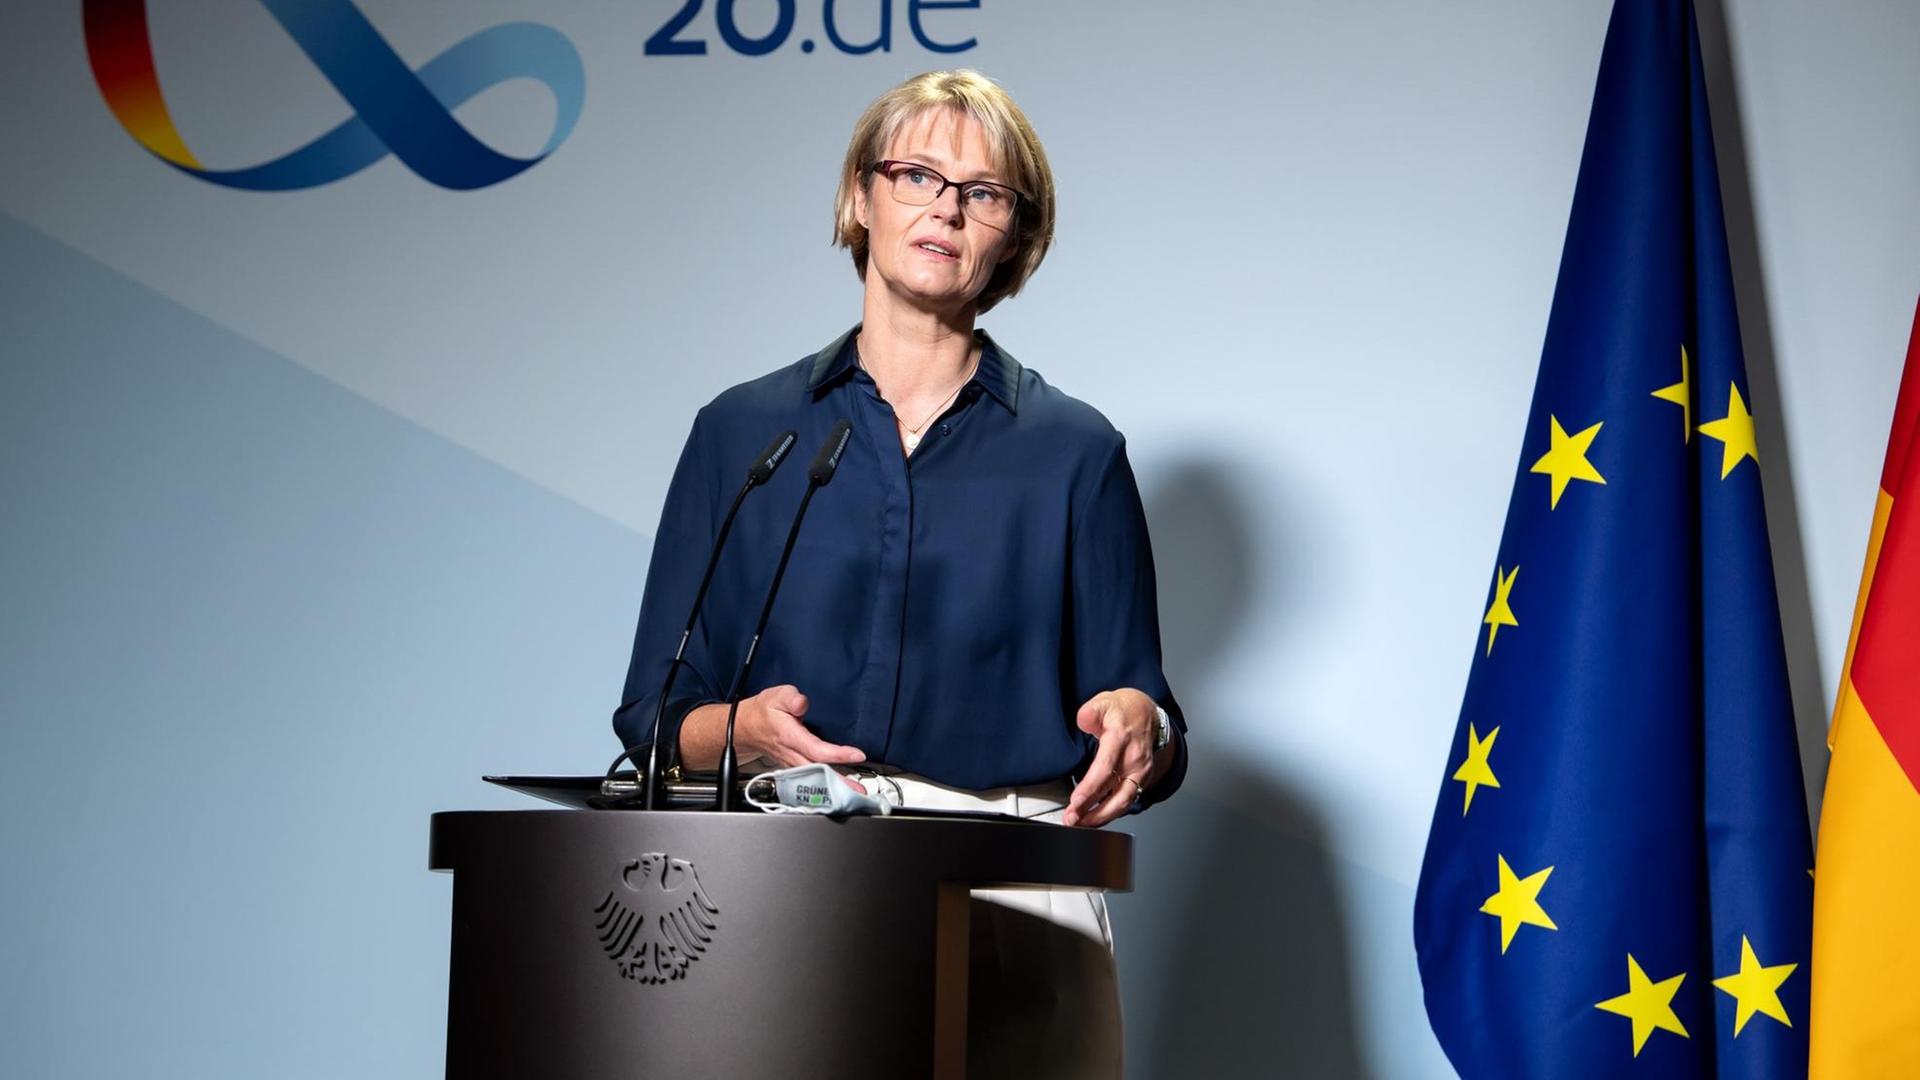 Anja Karliczek (CDU), Bundesministerin für Bildung und Forschung, äußert sich bei einer Pressekonferenz in ihrem Ministerium zu den Ergebnissen des "Schulgipfels".